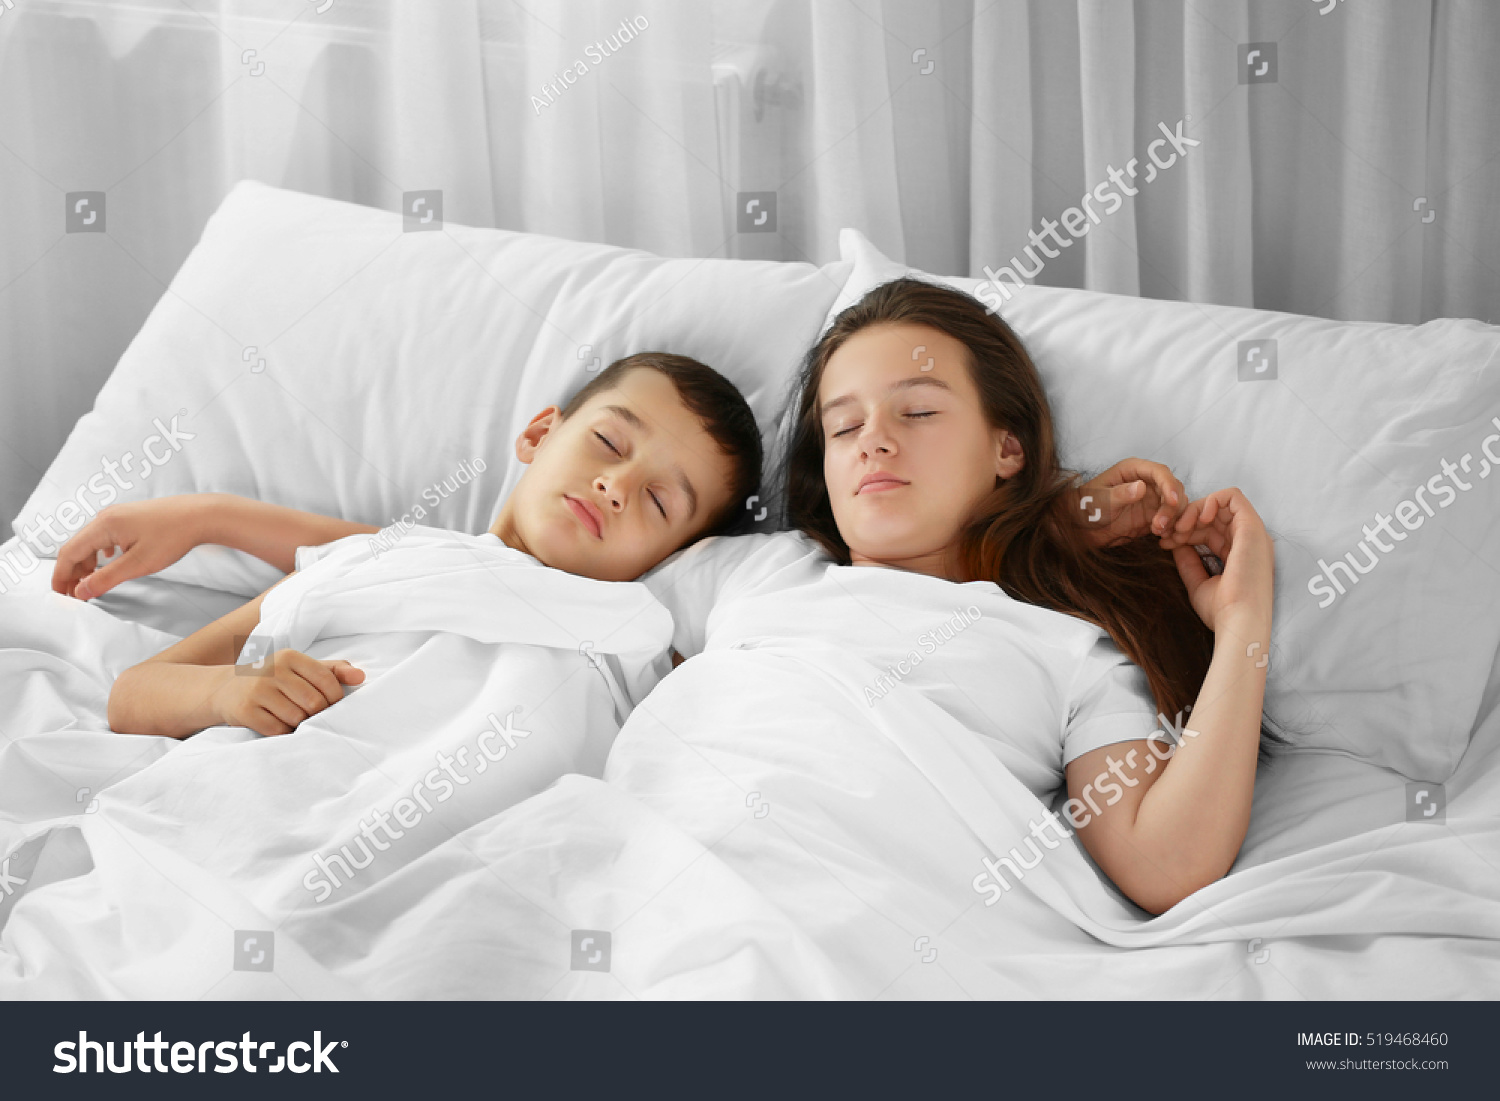 Порно Онлайн С Спящими С Сестрой